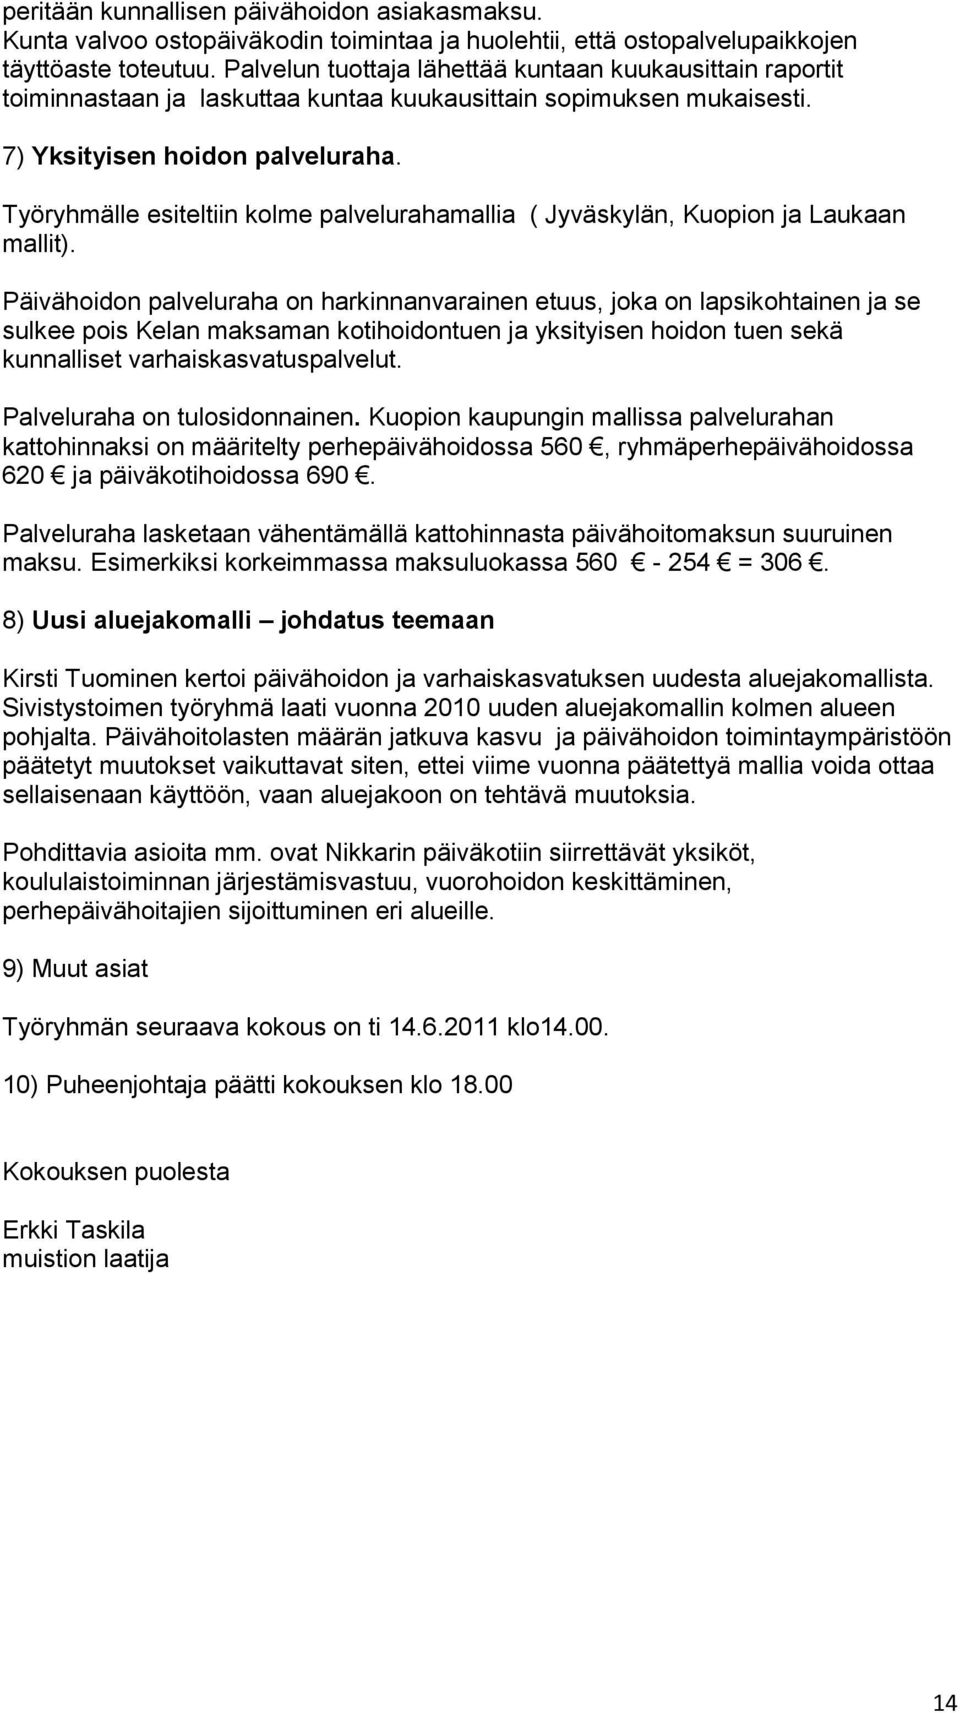 Työryhmälle esiteltiin kolme palvelurahamallia ( Jyväskylän, Kuopion ja Laukaan mallit).